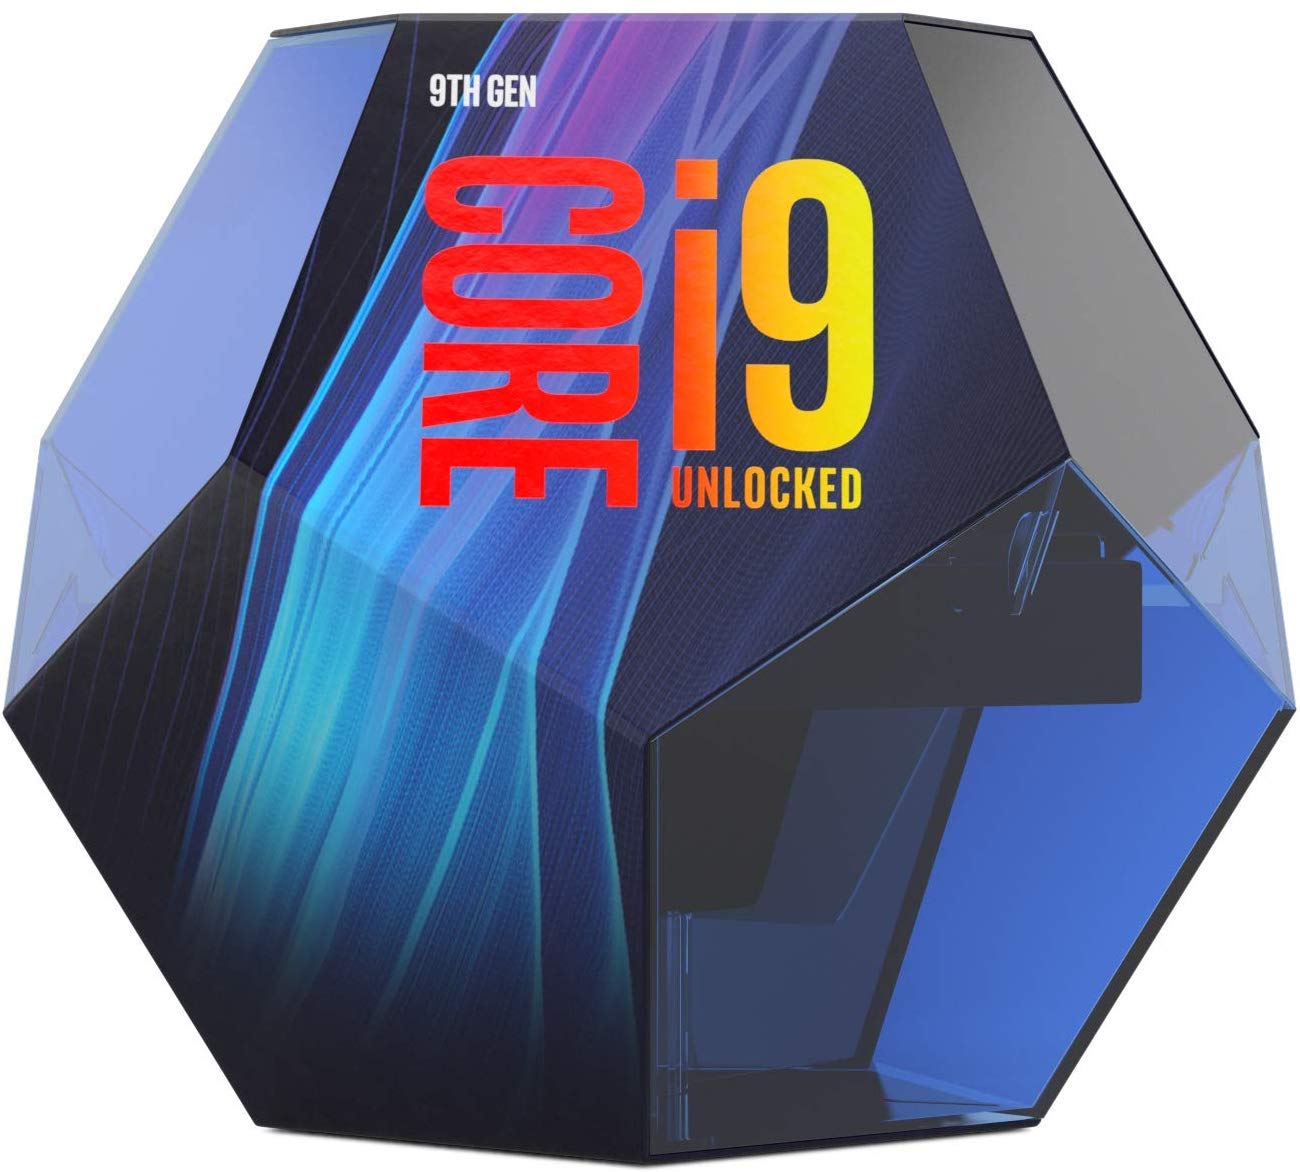 CPU Intel Core i9-9900K (3.60GHz Turbo Up To 5.00GHz, 8 Nhân 16 Luồng, 16M Cache, Coffee Lake)